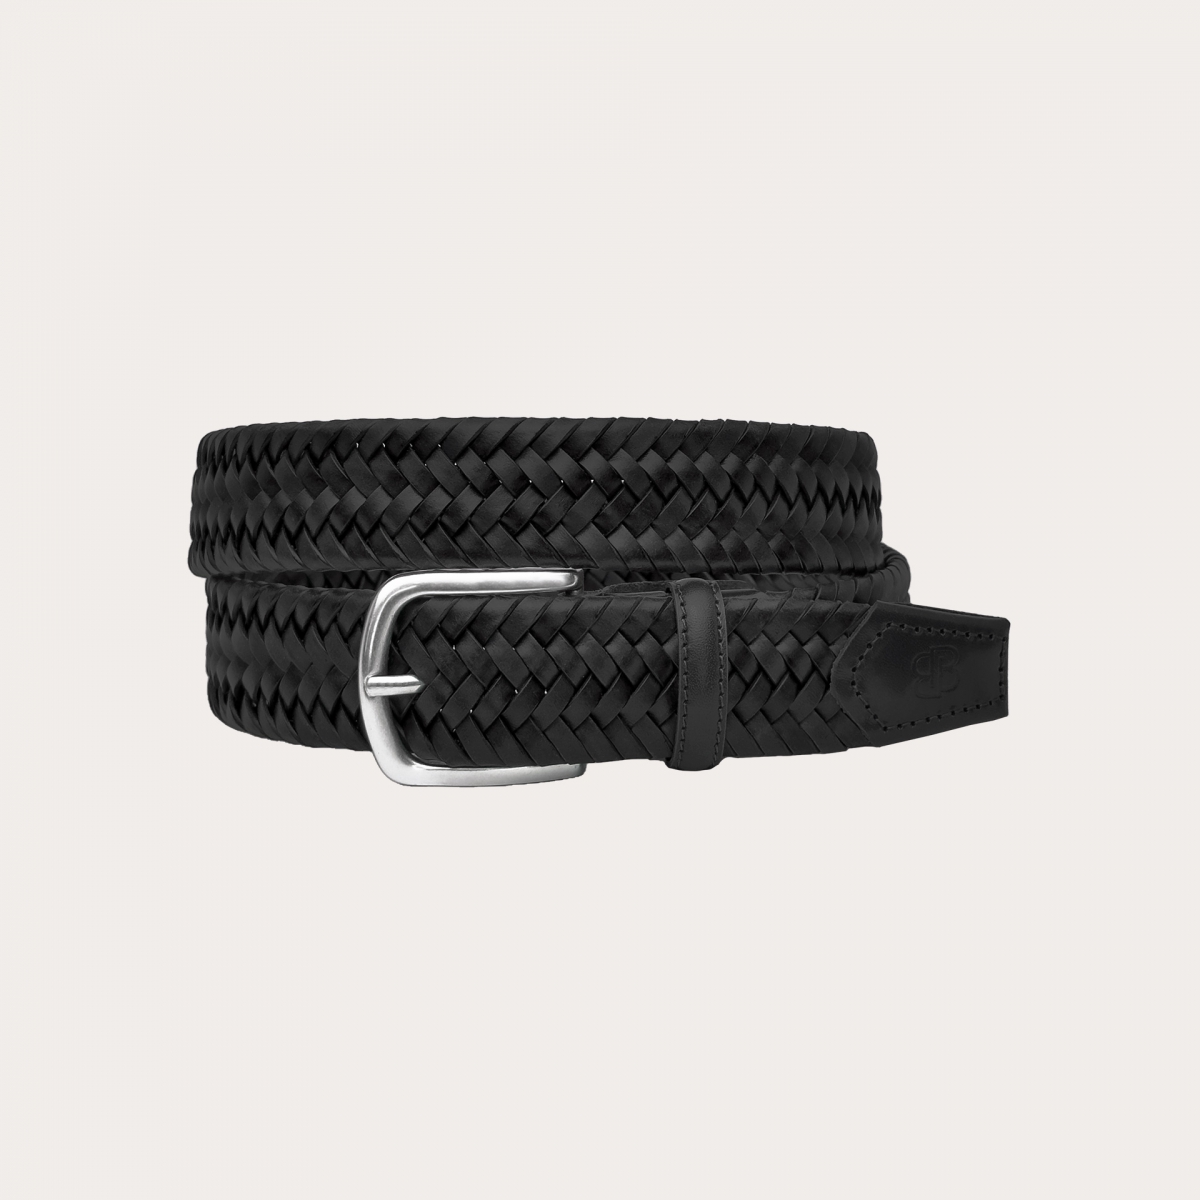 Cinturón elástico trenzado de cuero negro, sin níquel